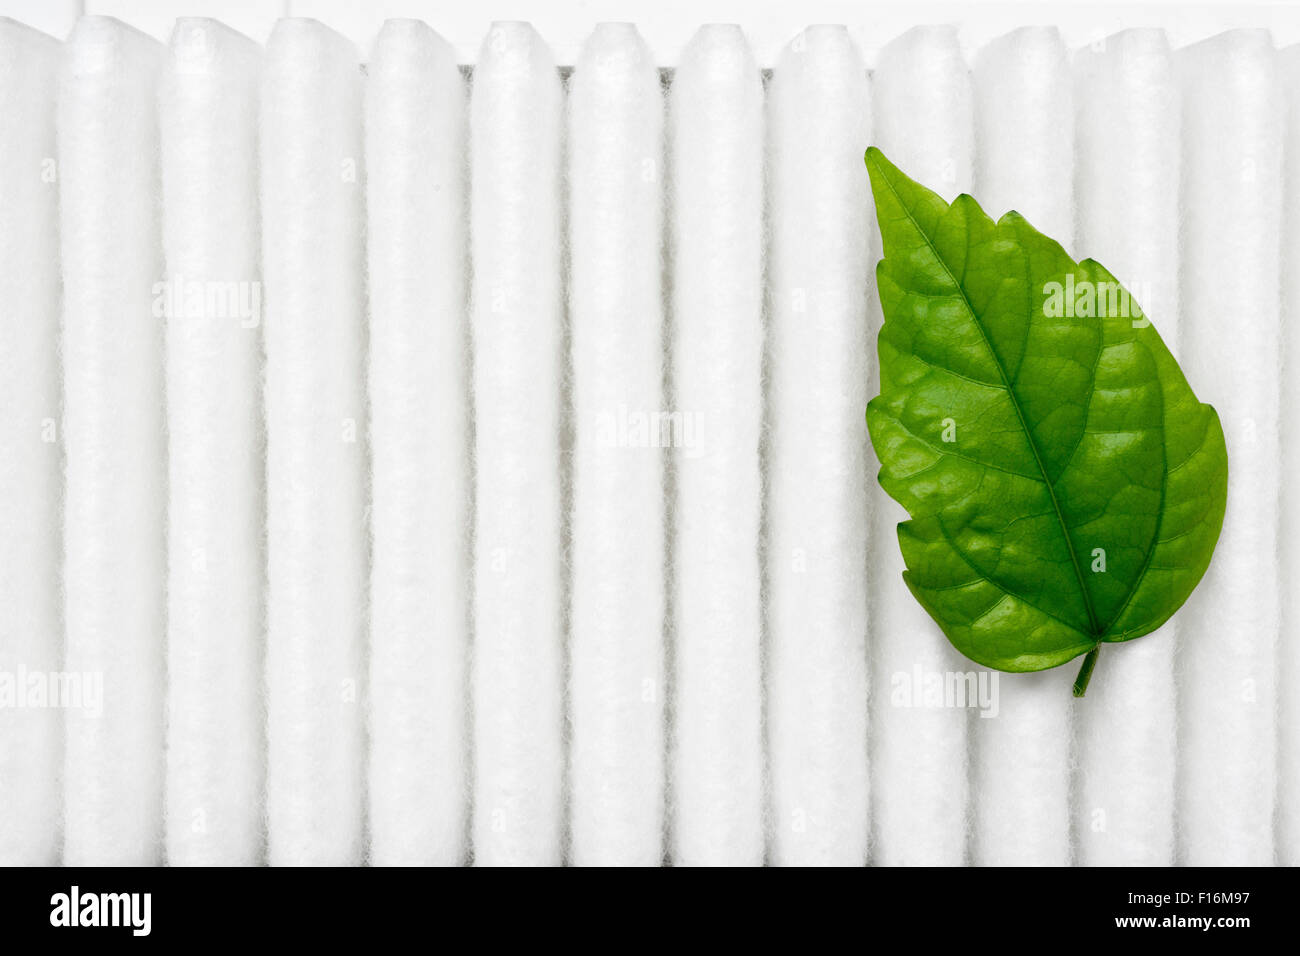 Luft-Reinheit-Konzept mit kleinen frischen grünen Blatt auf weißen Filterfläche Stockfoto